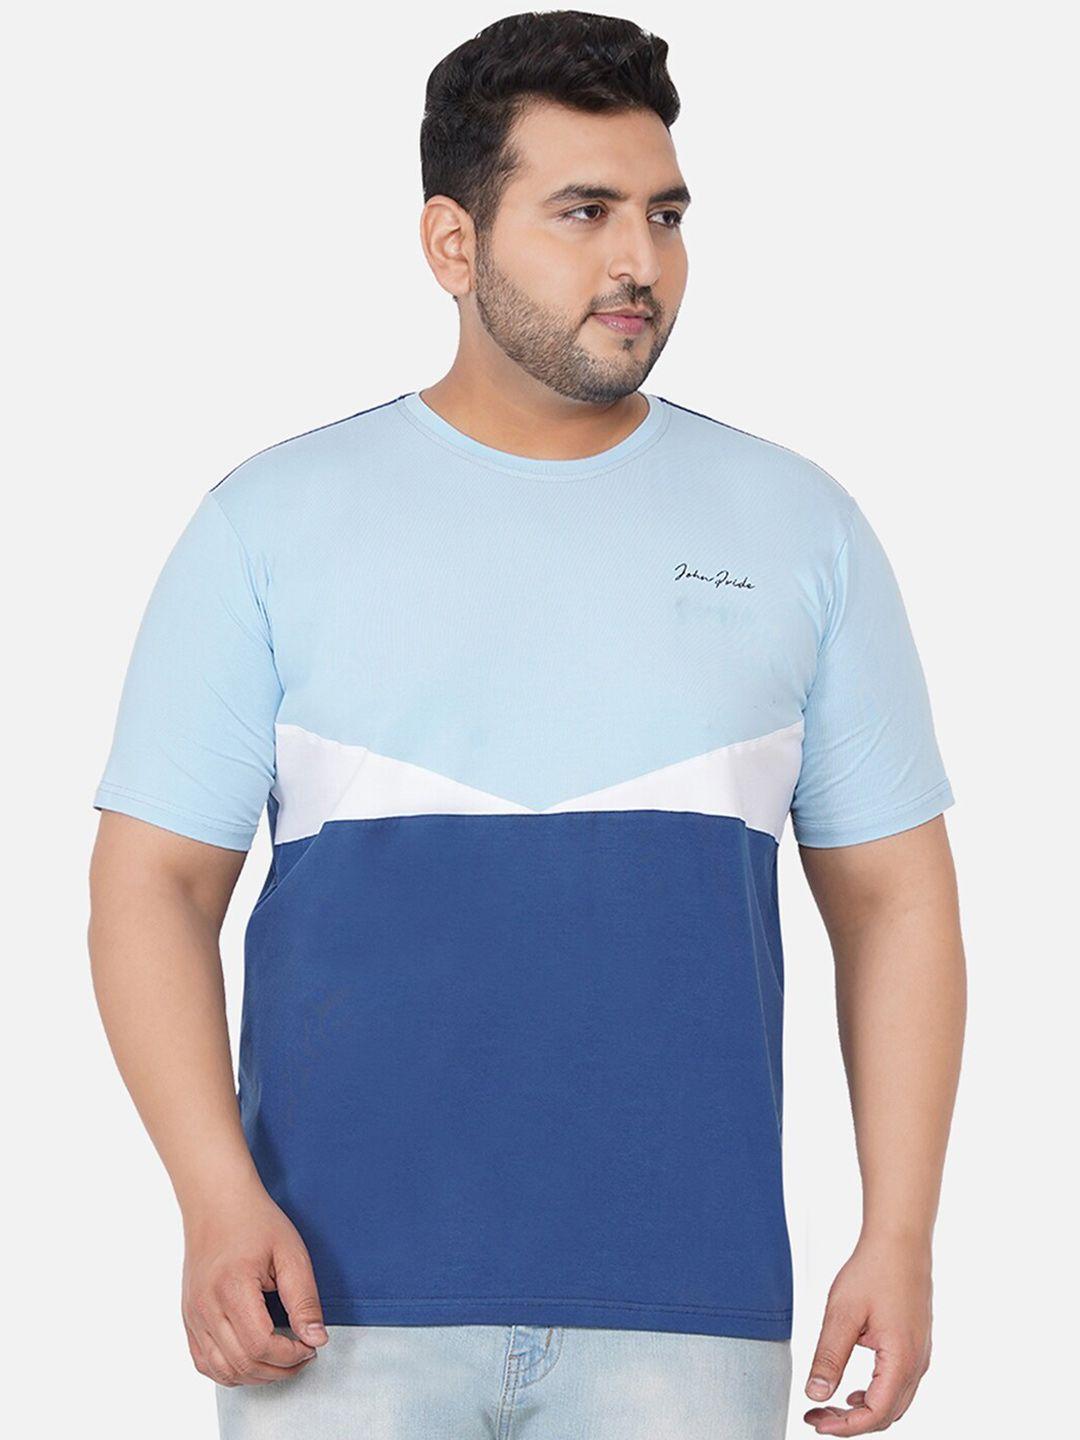 john pride men plus size blue & white colourblocked t-shirt